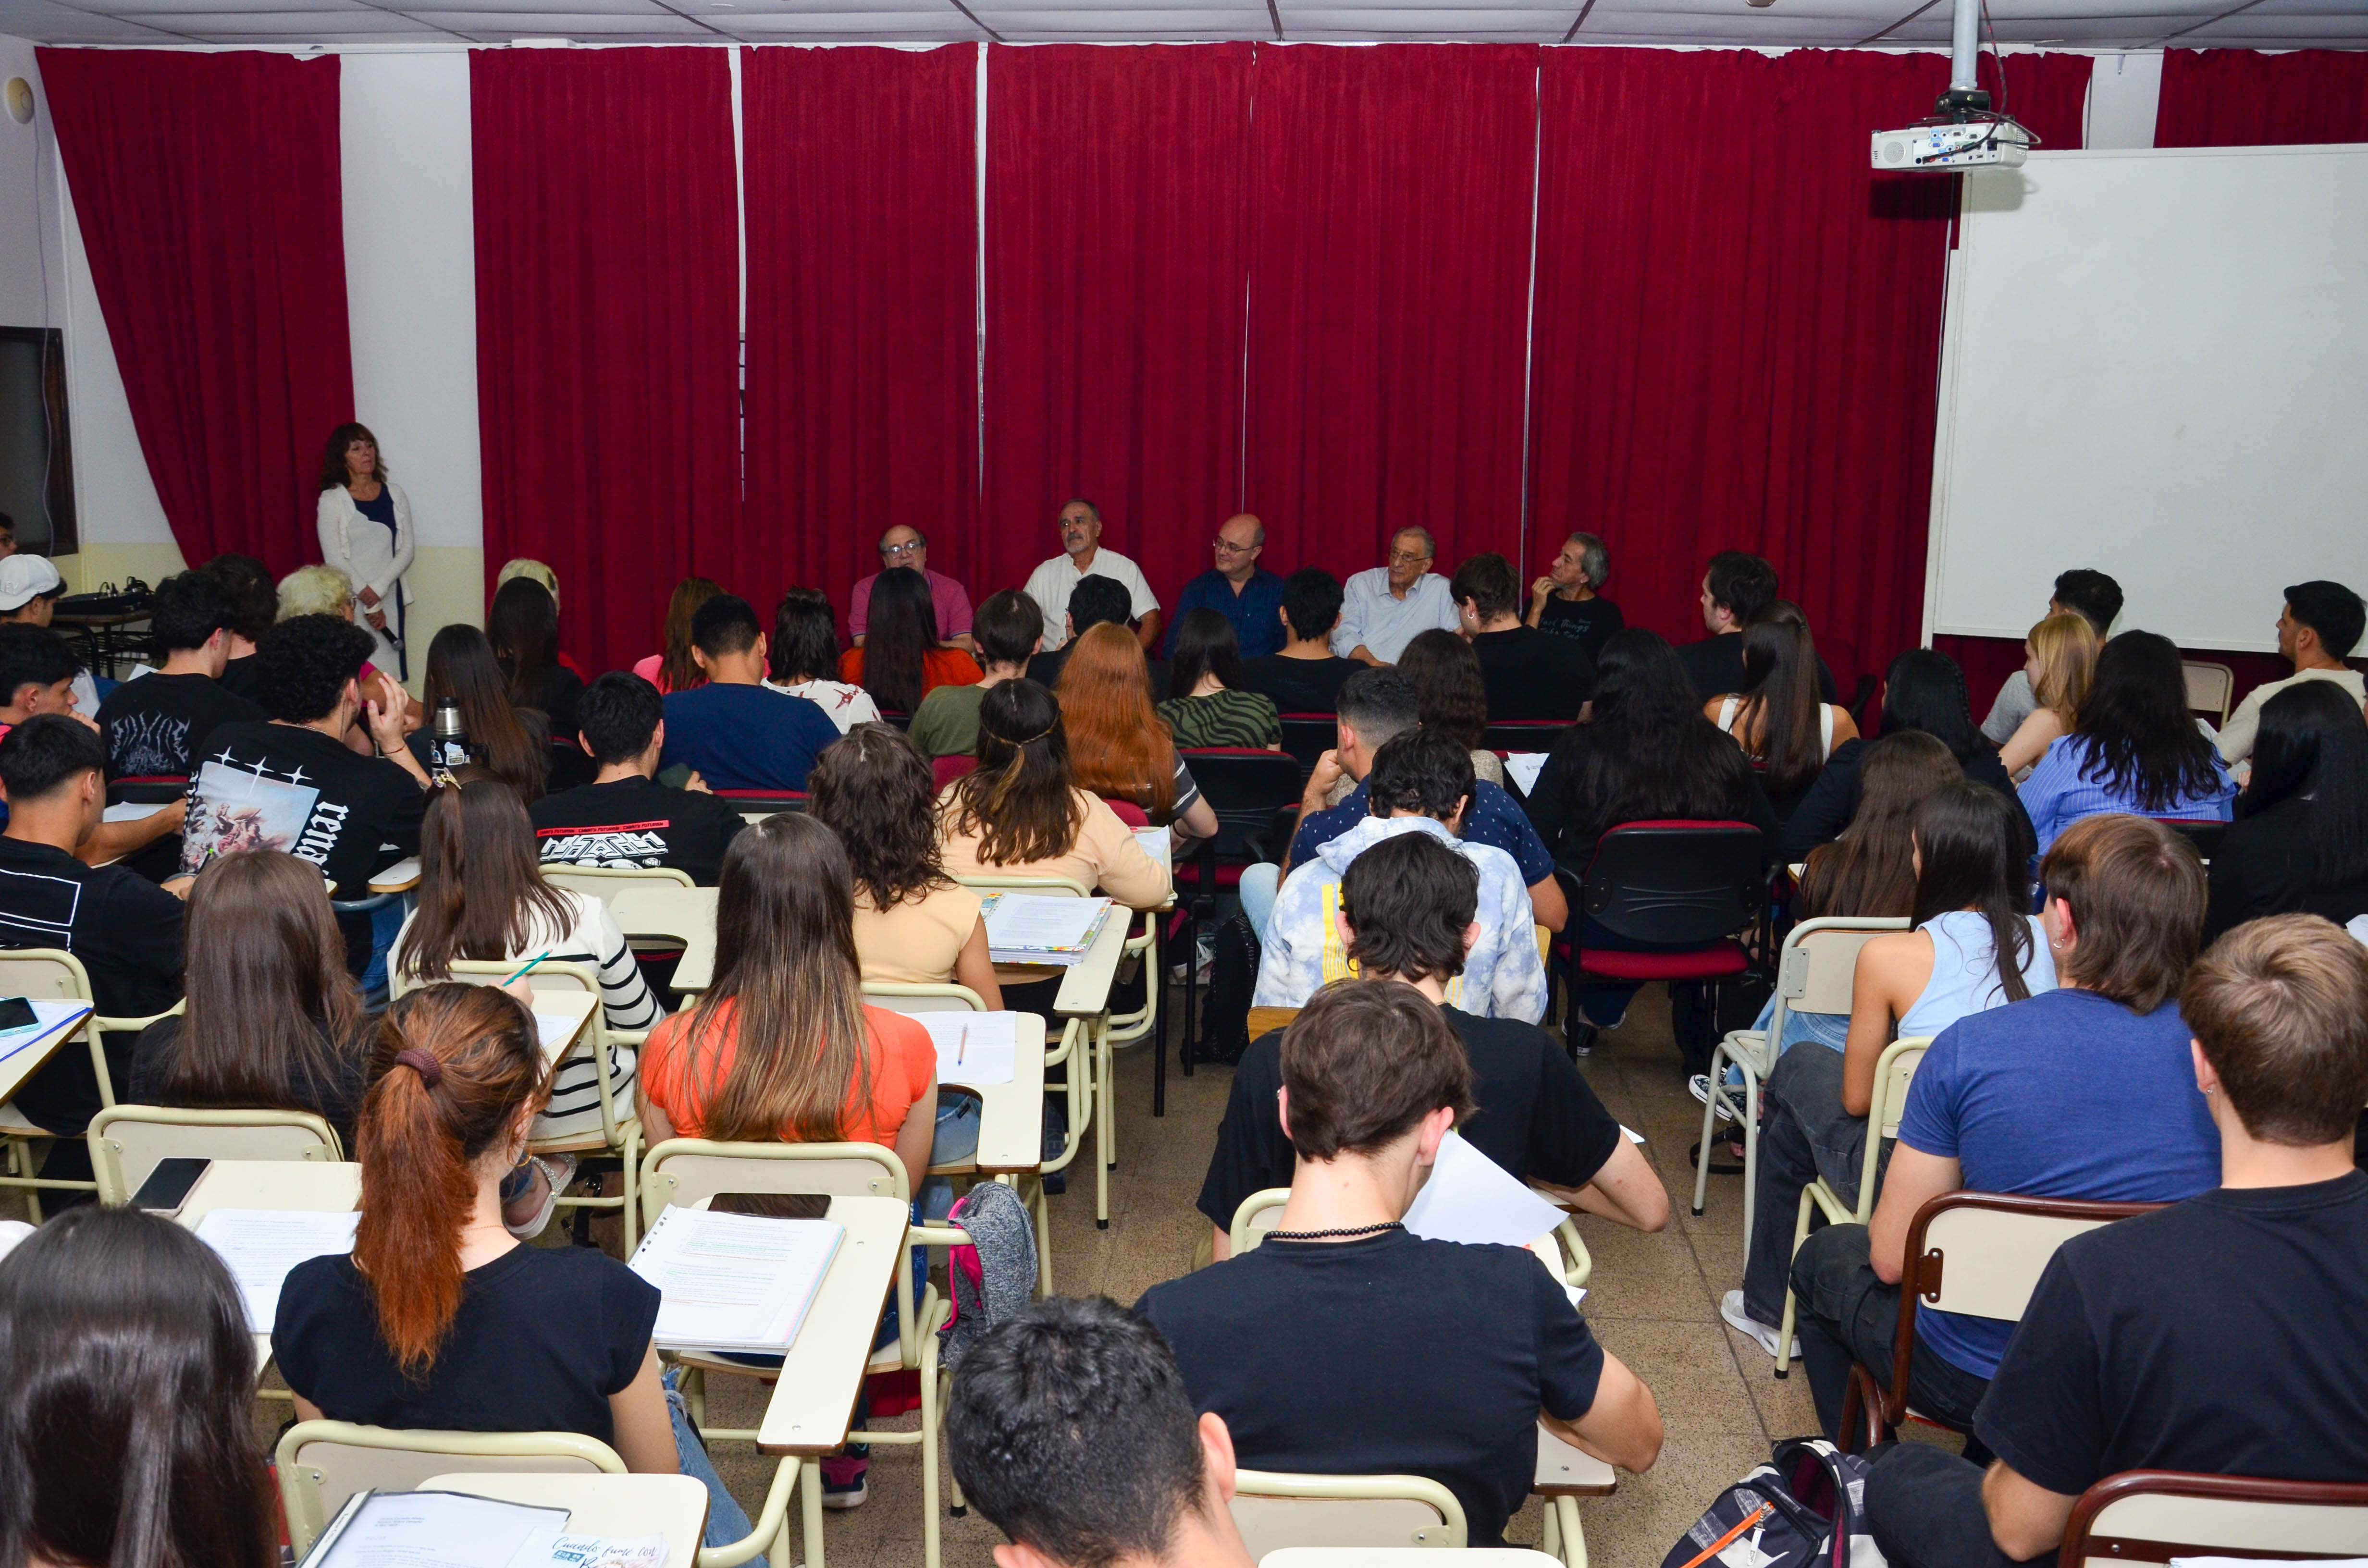 VIII Encuentro “La Universidad charla con escritores”: Un diálogo literario enriquecedor